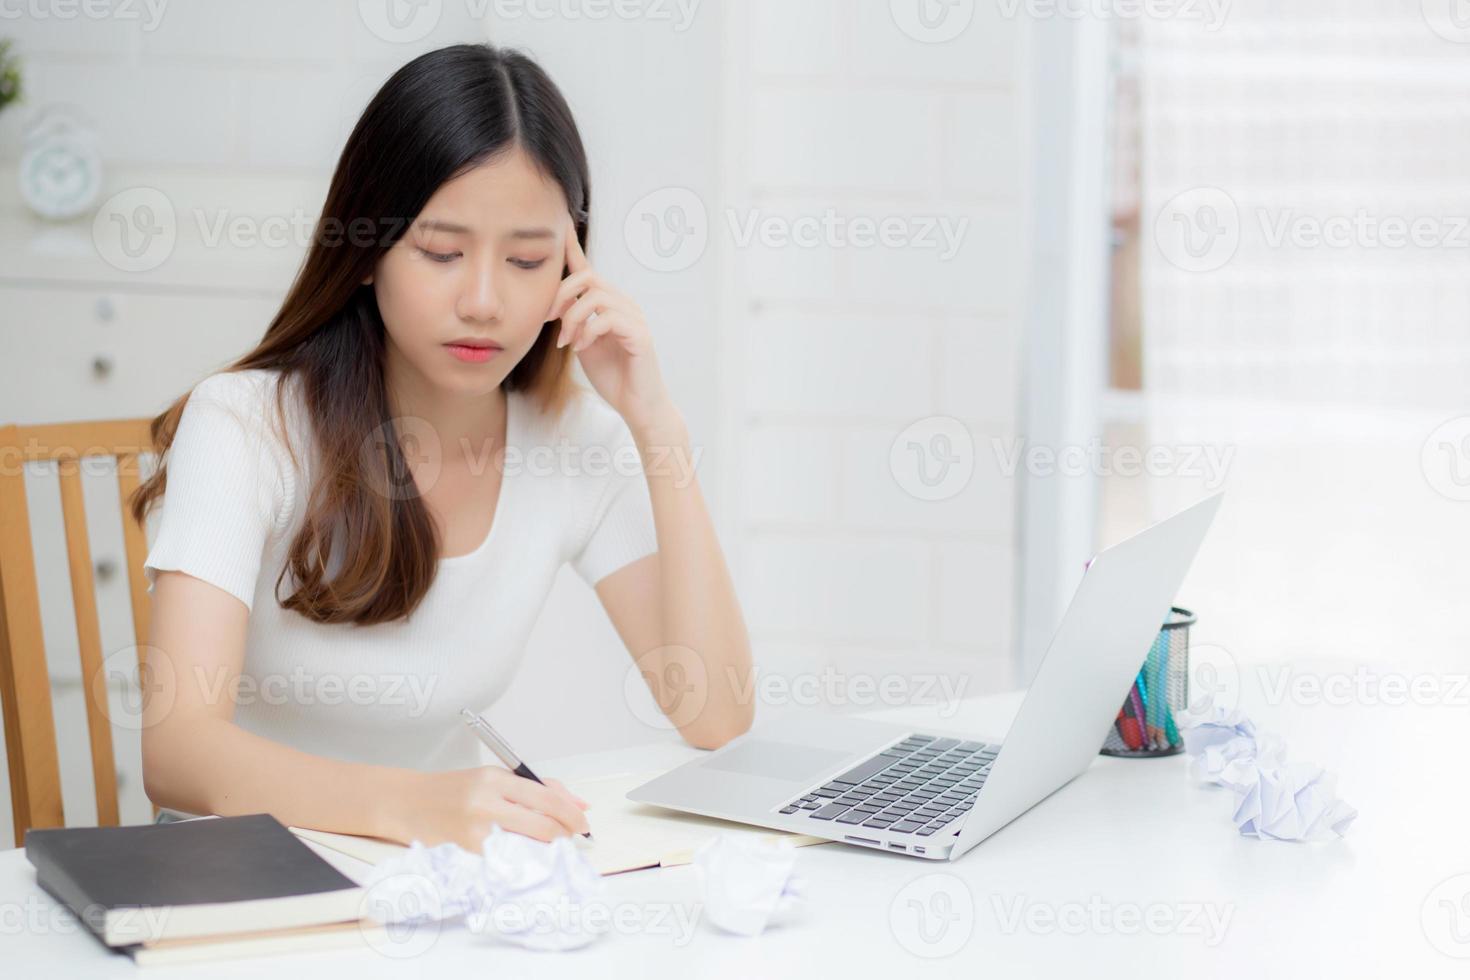 jonge aziatische vrouw die met een laptop werkt, denkt een ideeproject en papier verfrommeld met een probleem op tafel thuis, meisje dat een notebook gebruikt met gefrustreerd en problemen, zakelijk en freelance concept. foto